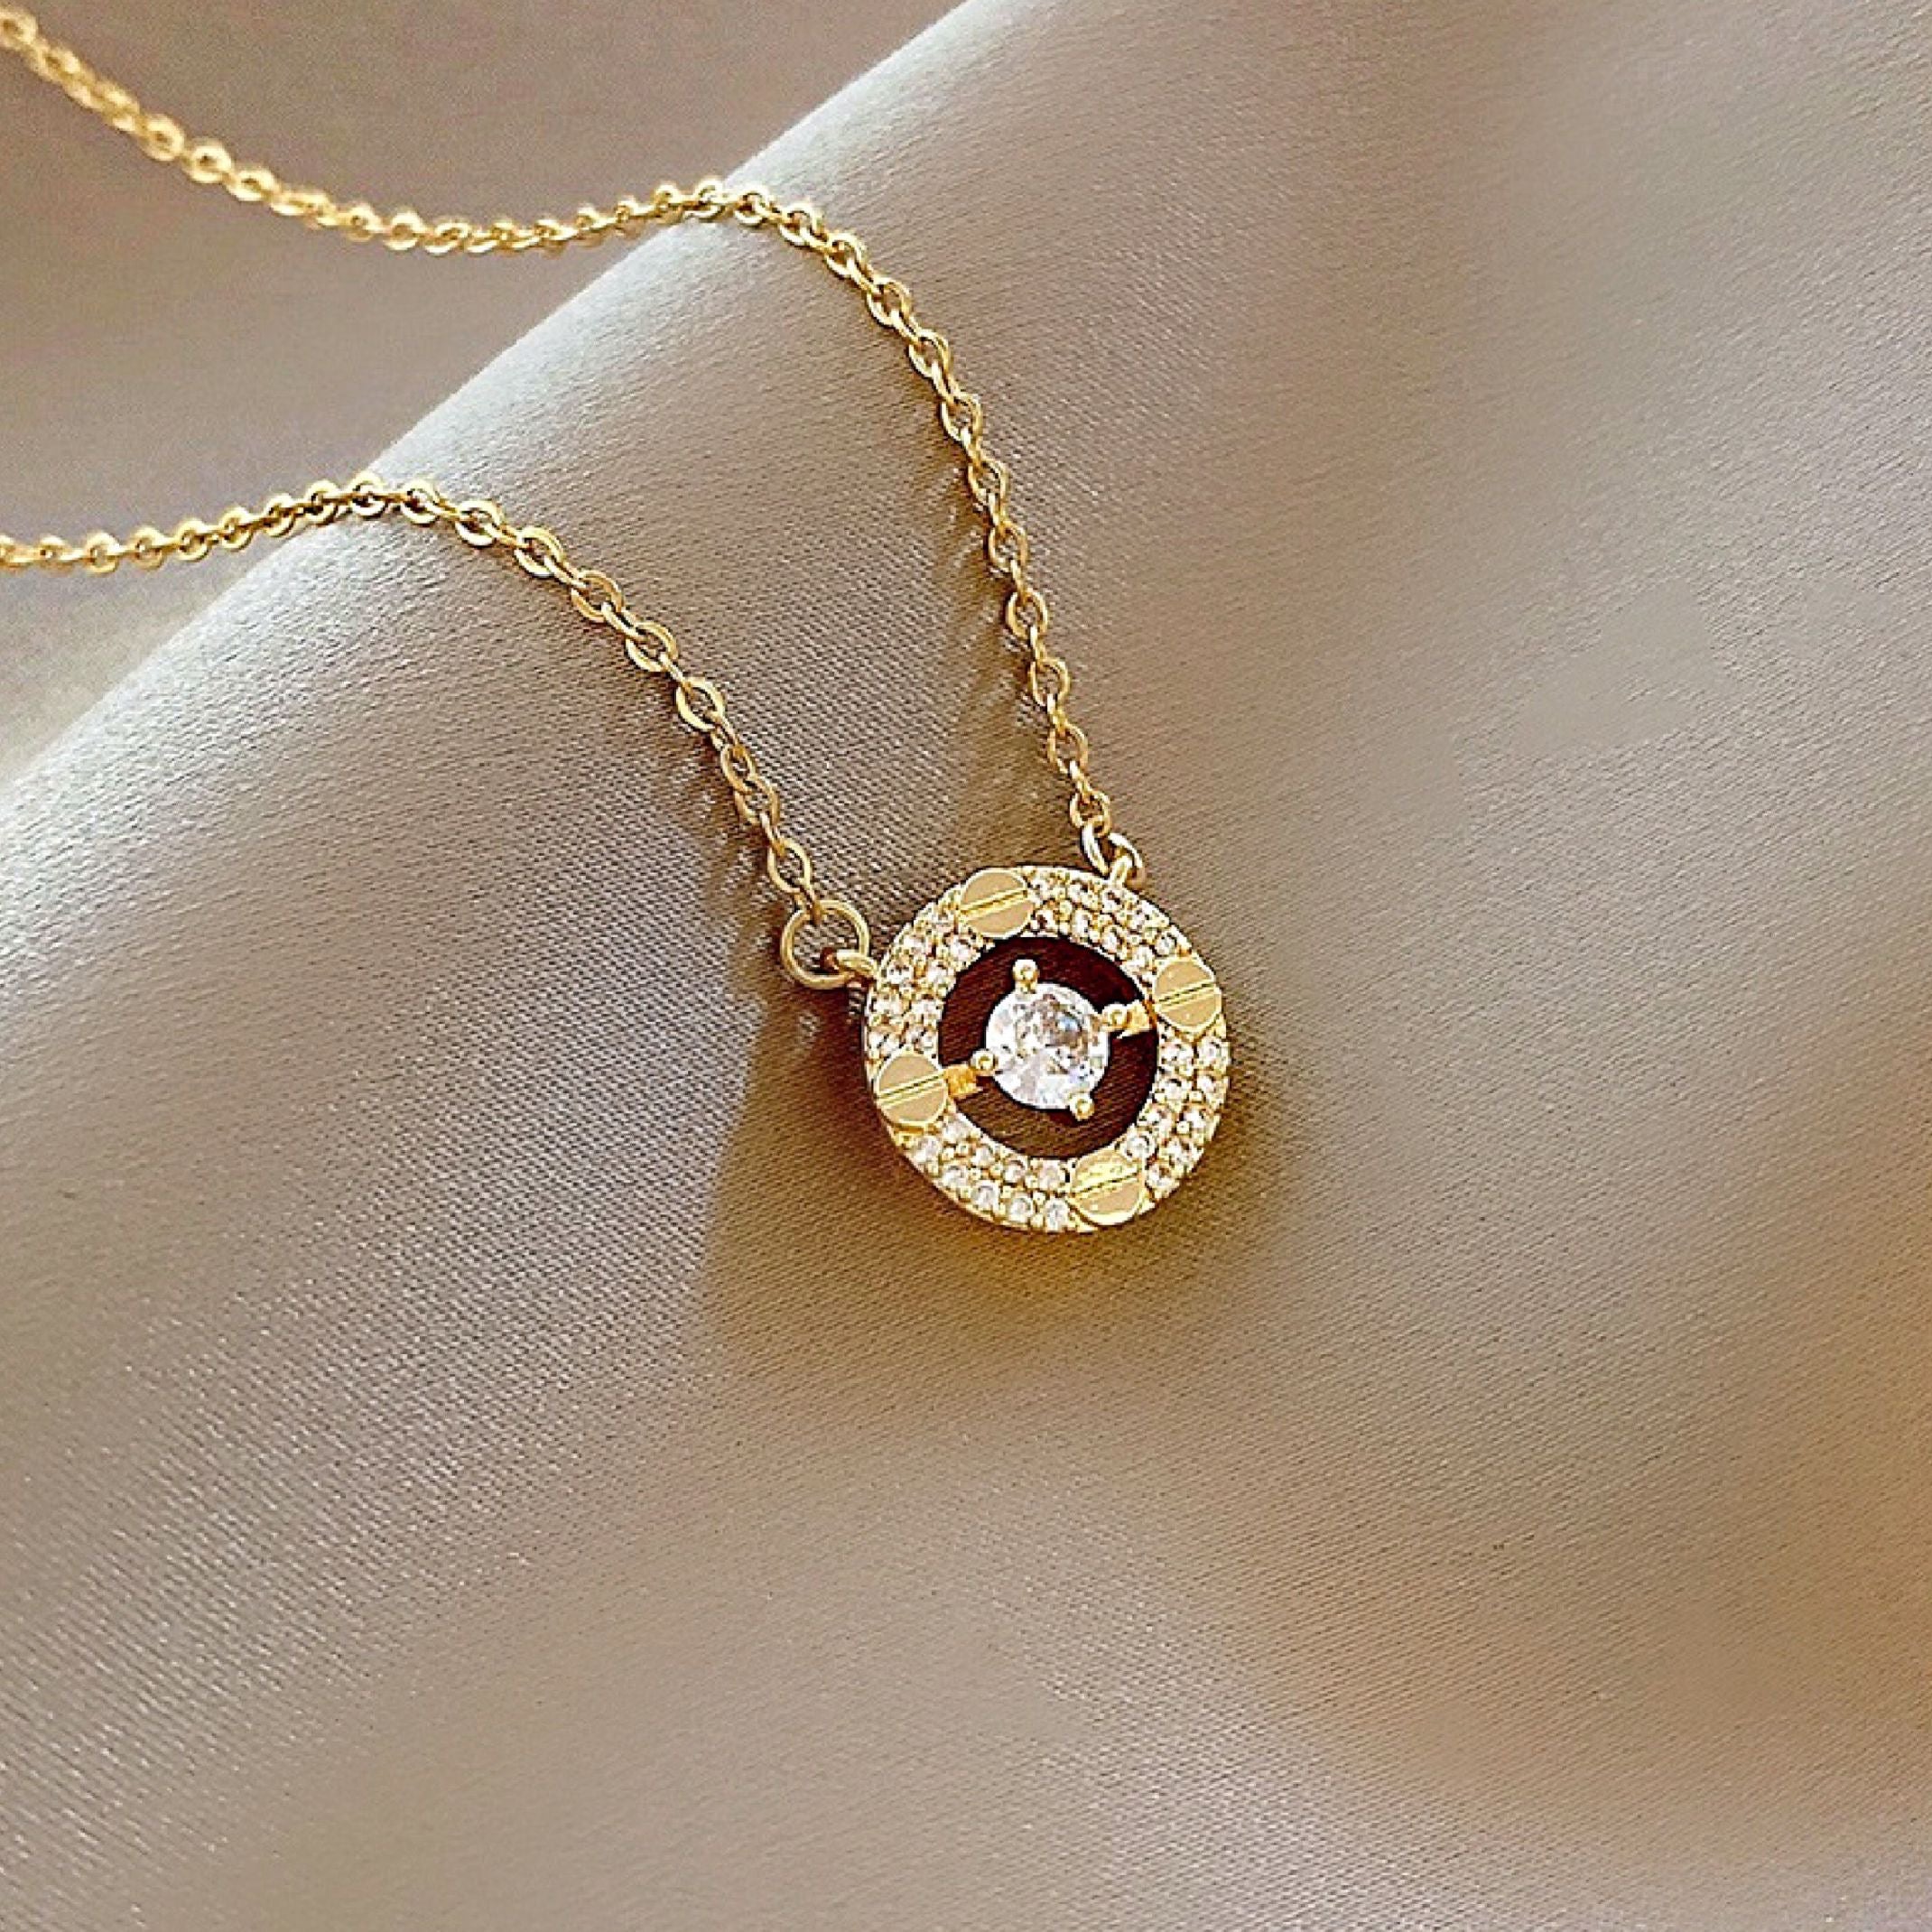 Round diamond necklace 